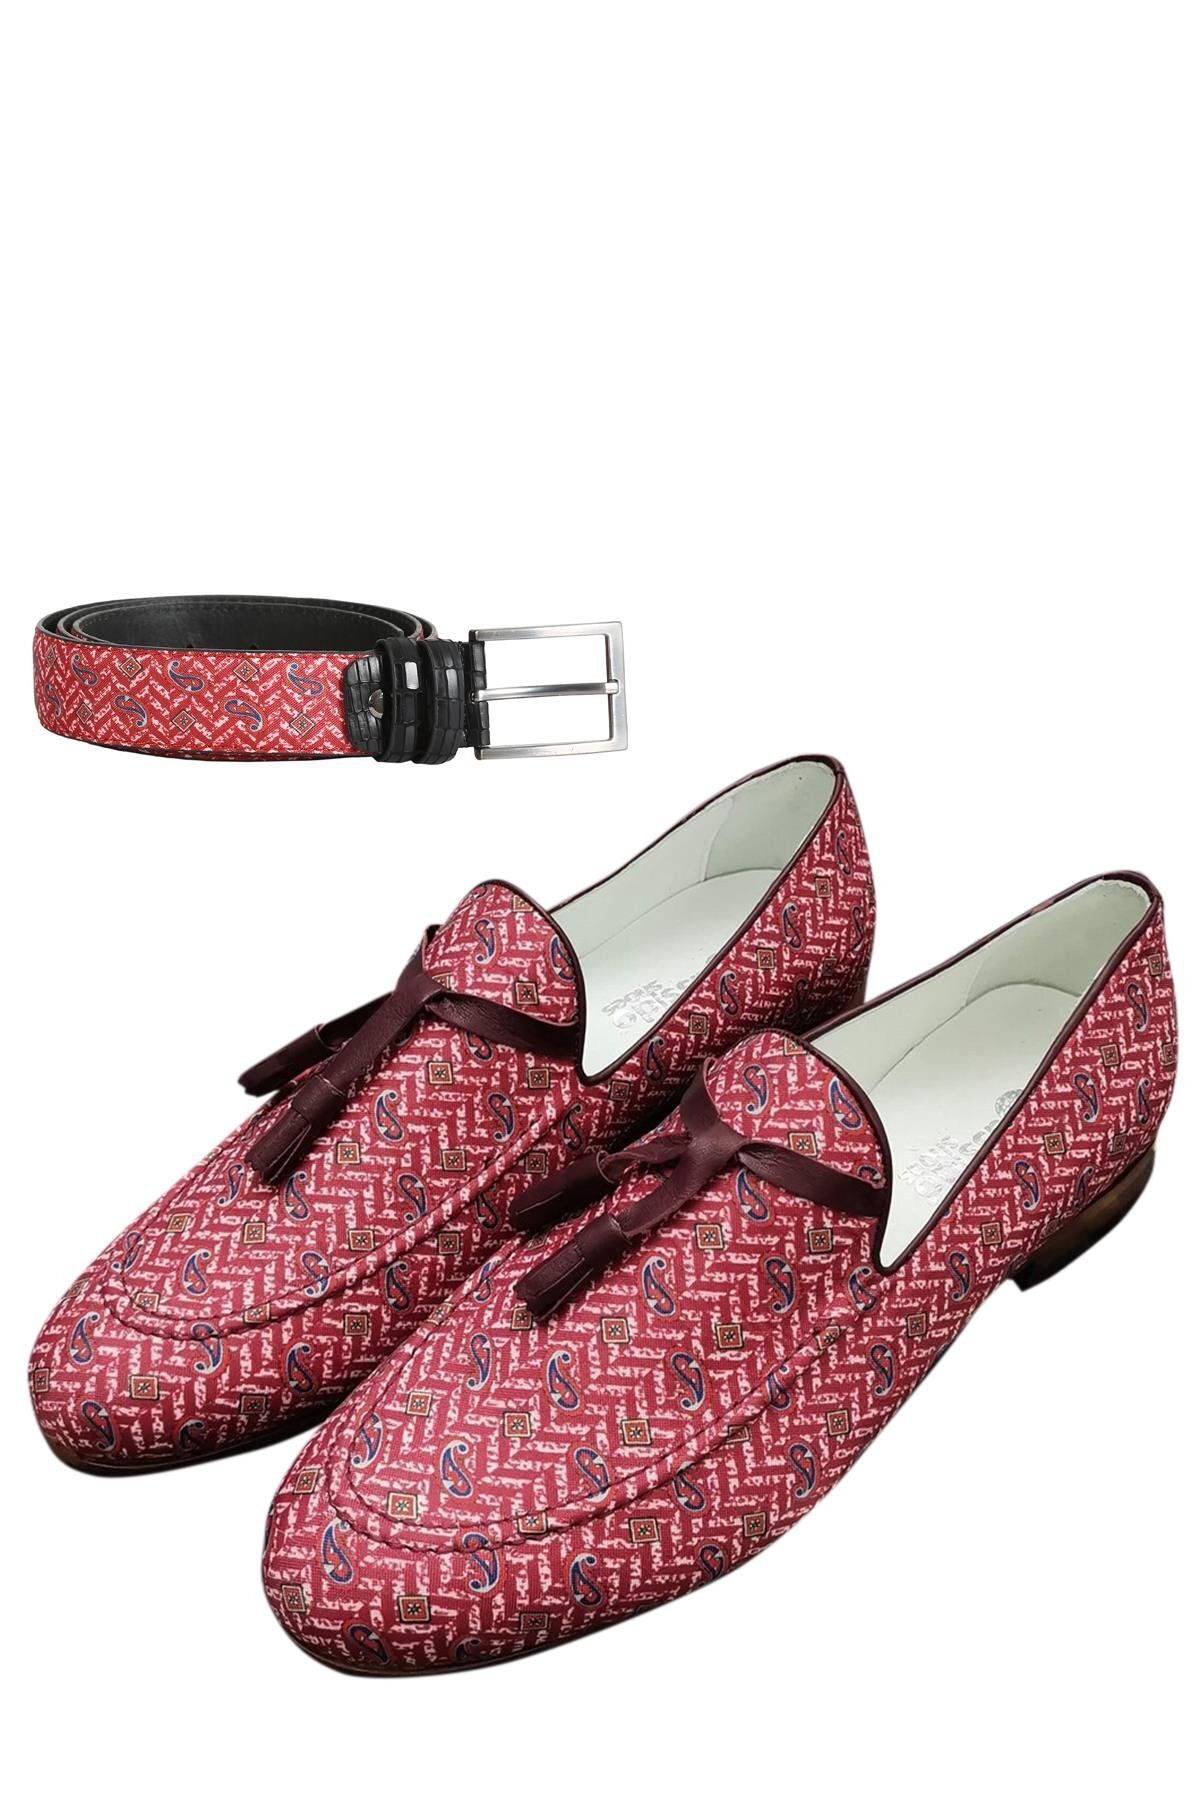 CassidoShoes Hakiki Deri Özel Tasarım Renkli Keten Ayakkabı 022-3247